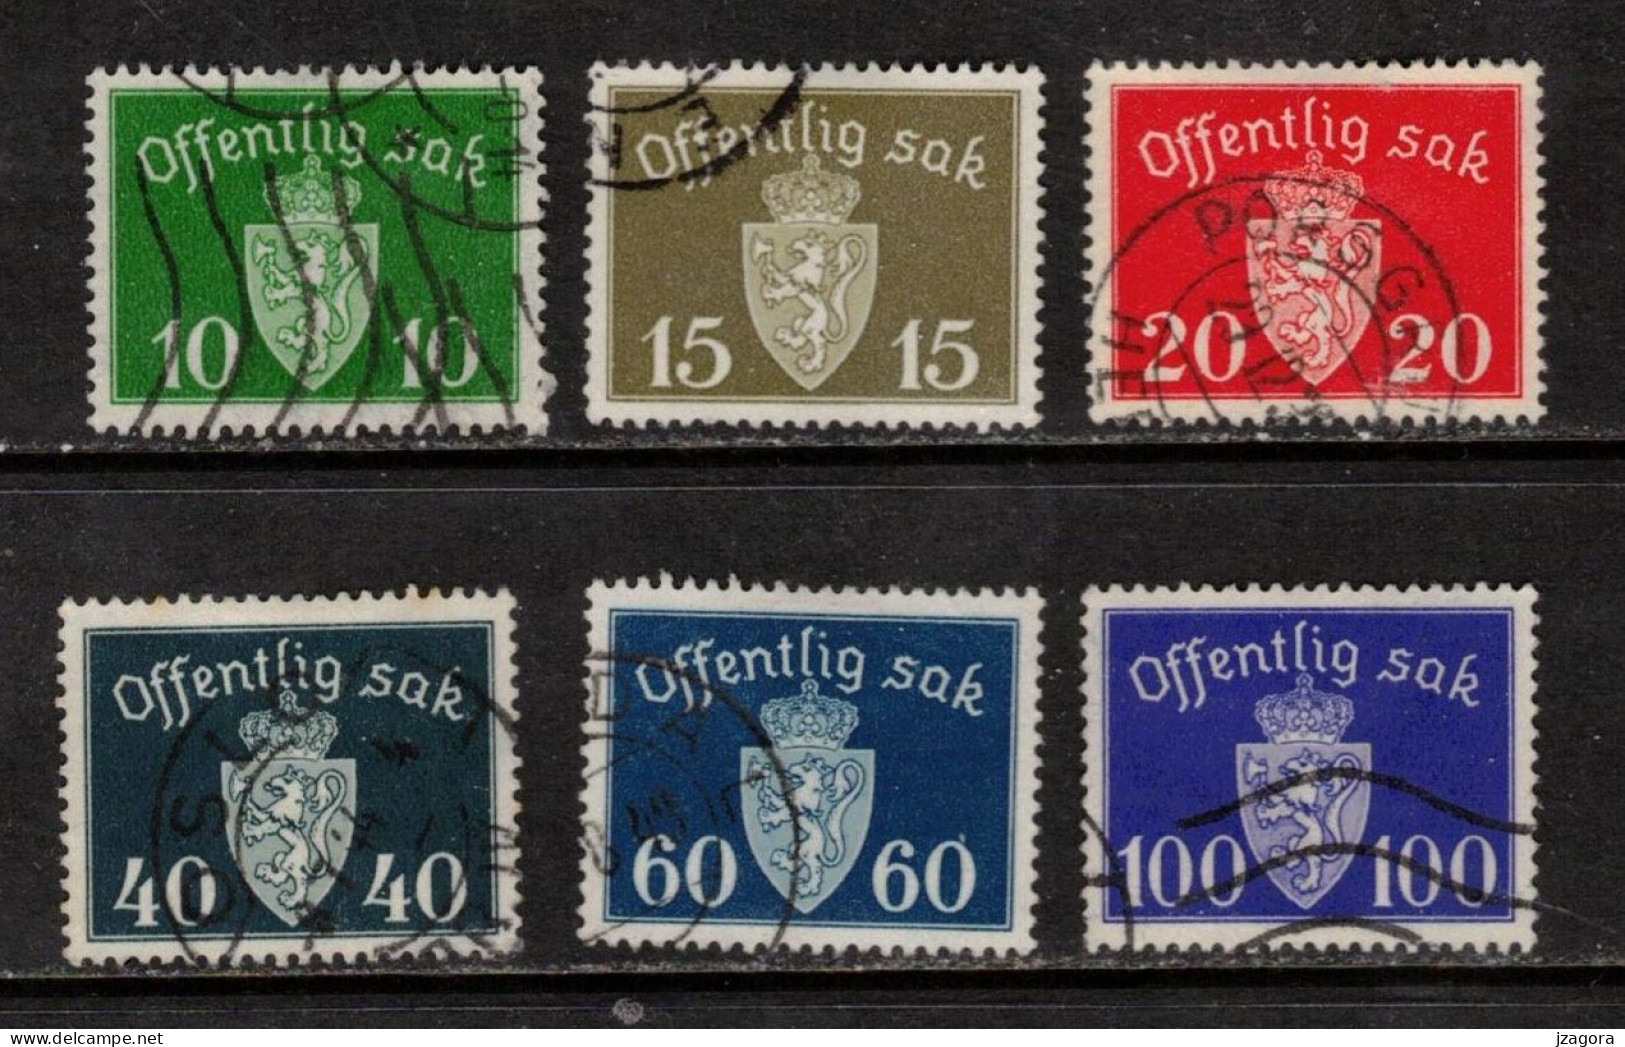 NORWAY NORGE NORWEGEN NORVÈGE 1939 - 1945 MI  35 36 37 41 42 43 OFF.SAK.  DIENSTMARKEN COAT OF ARMS STAATSWAPPEN USED - Dienstzegels